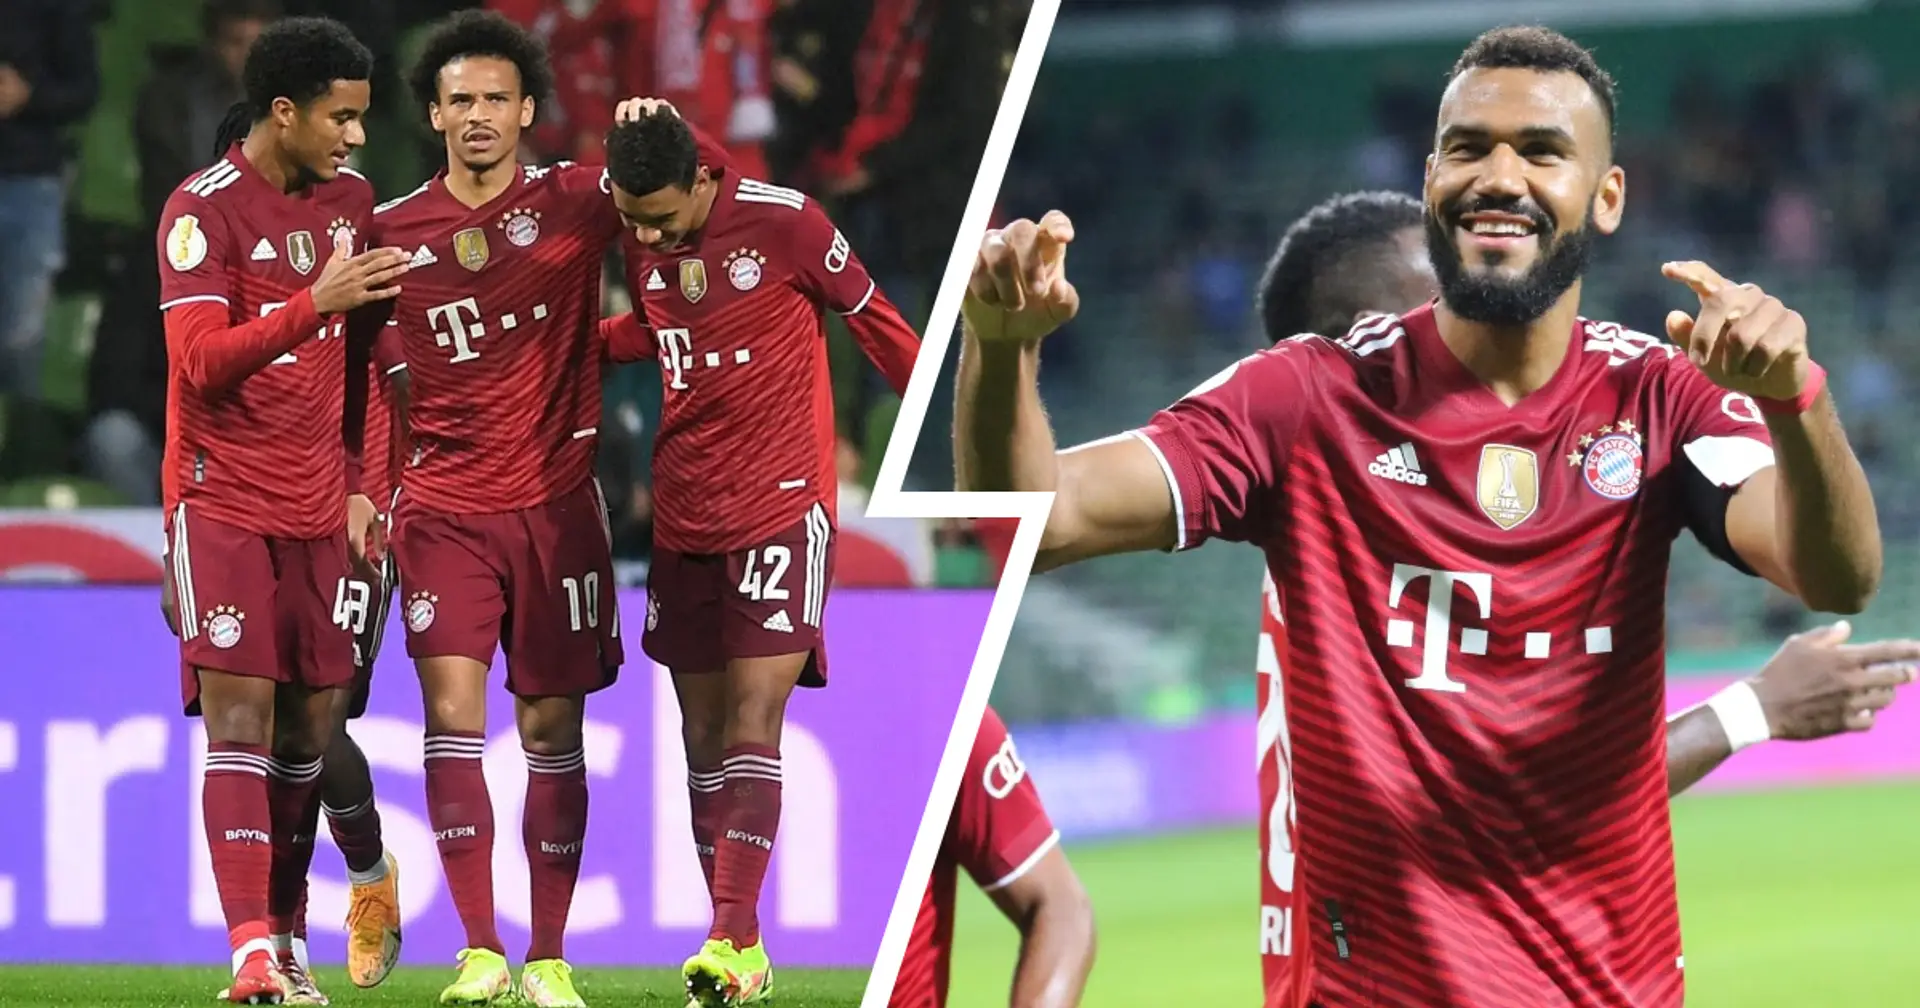 Es ist zweistellig: Bayern erzielt 12 Tore und feiert den größten Sieg ohne Gegentore in Vereinsgeschichte!